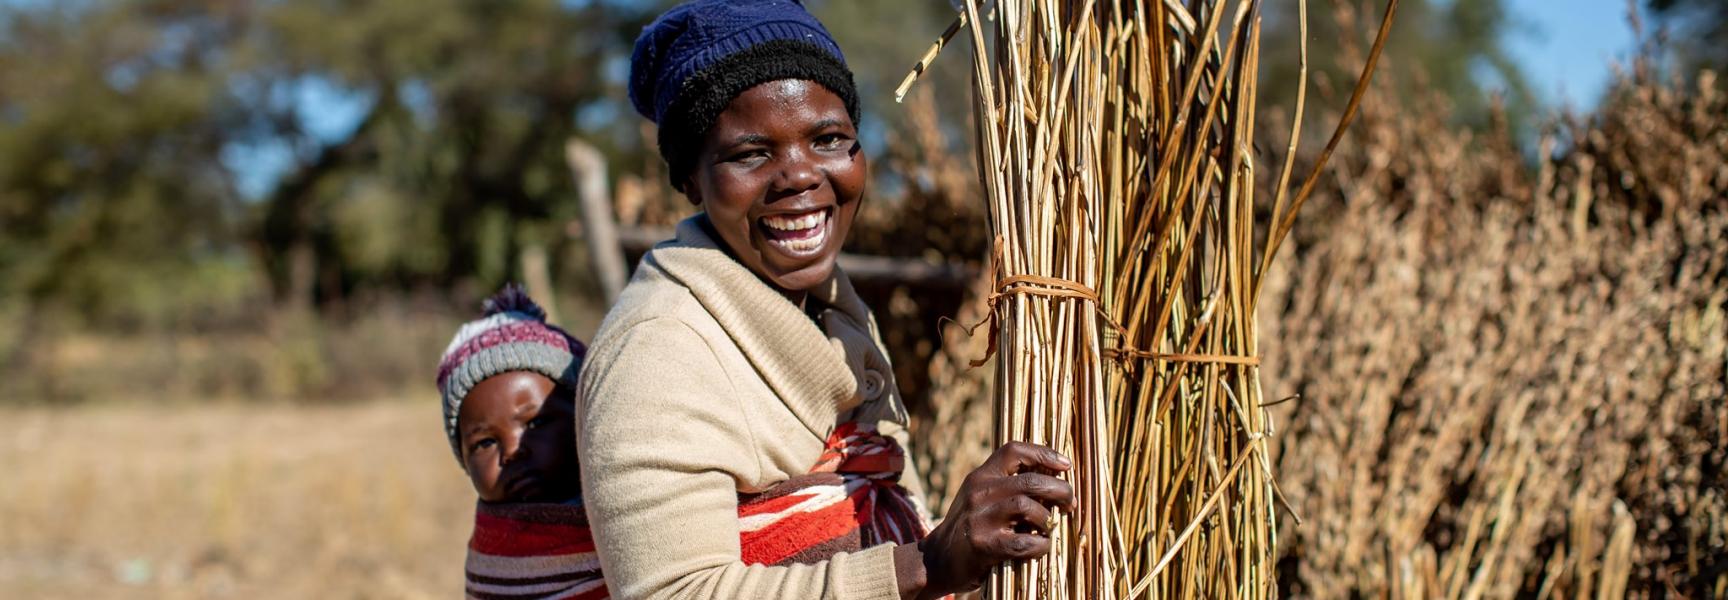 Una mujer rural con su niño en Zimbabwe